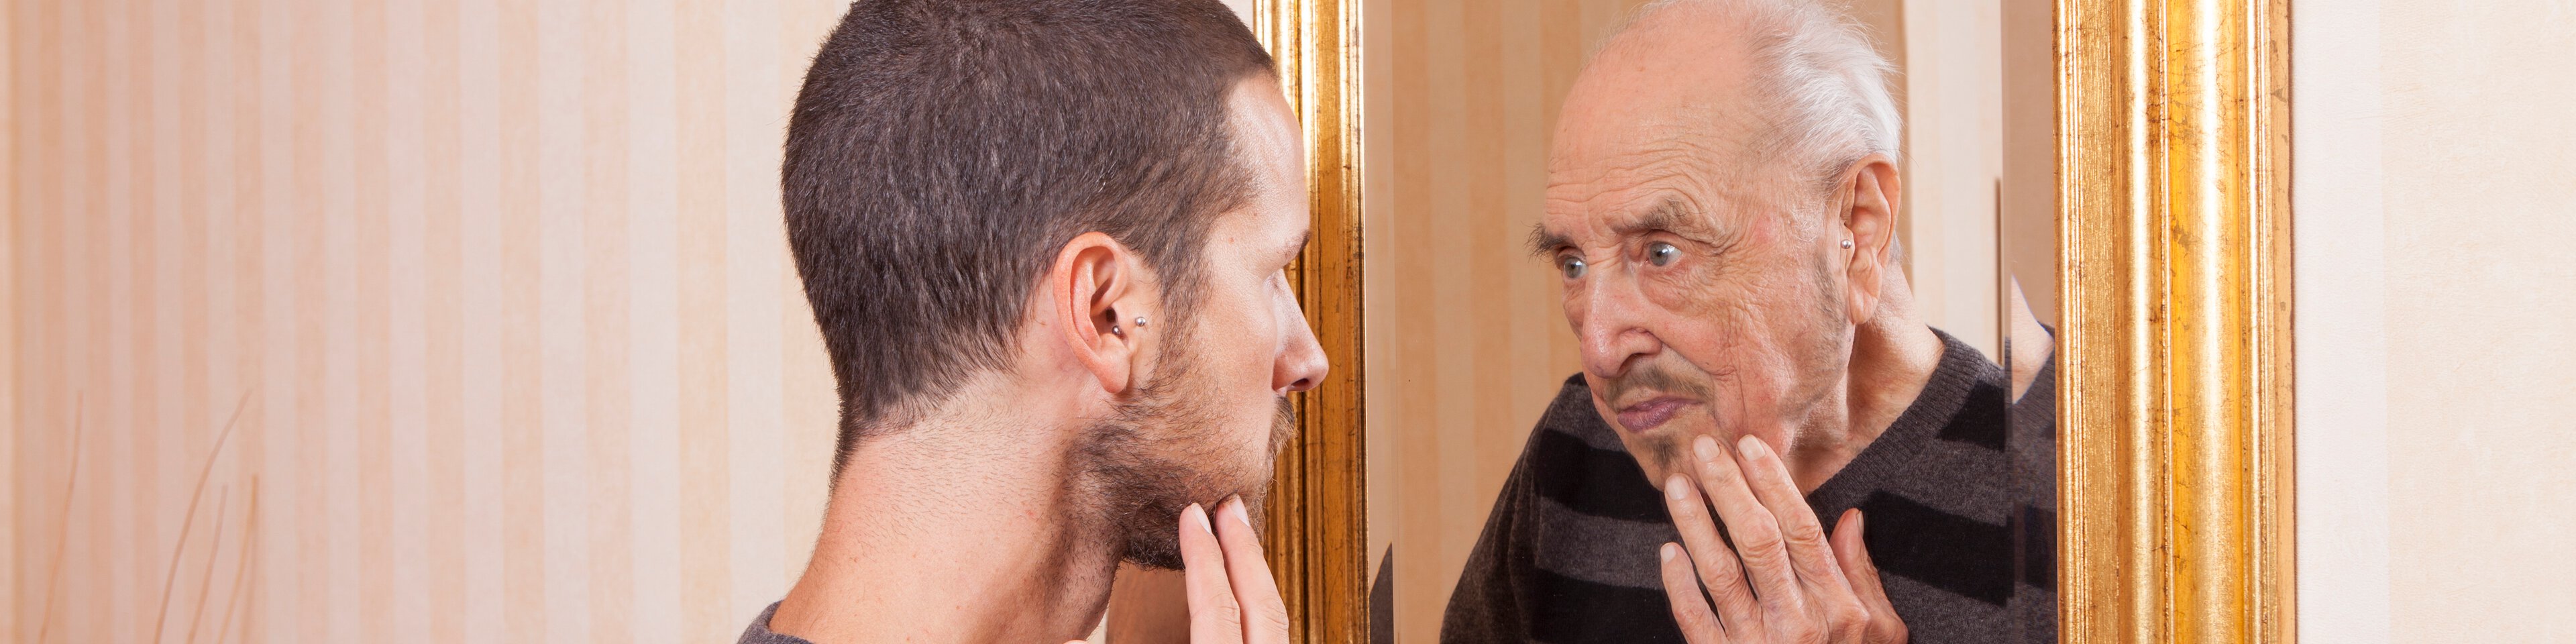 Ein junger Mann sieht in den Spiegel und sieht sich als alten Mann | © tommasolizzul - Getty Images/iStockphoto